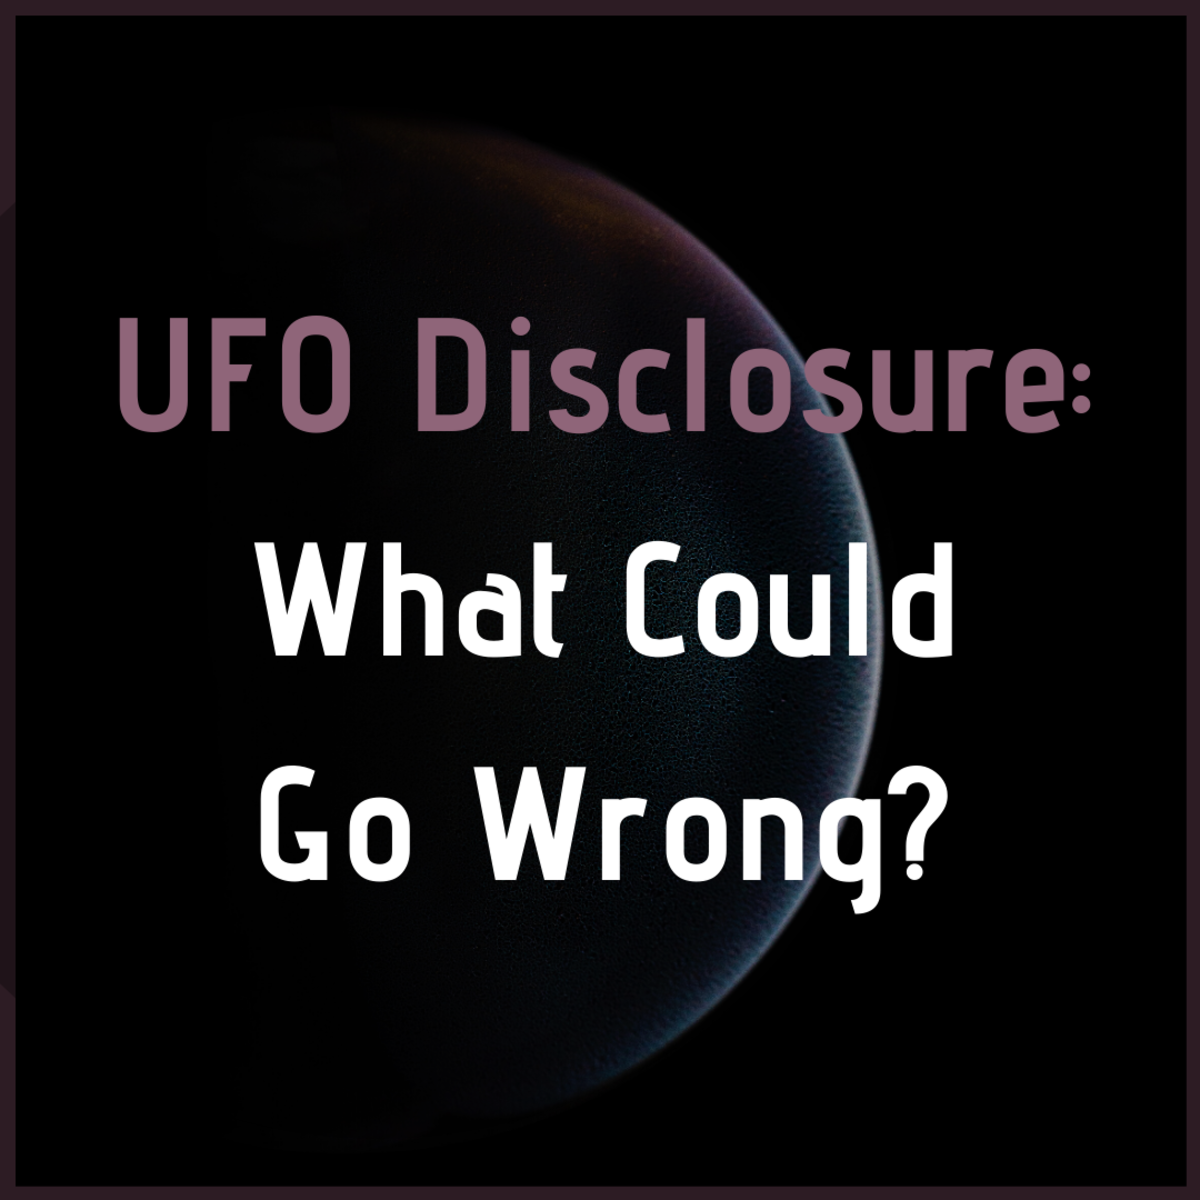 探索UFO文件披露的一些可能的后果。